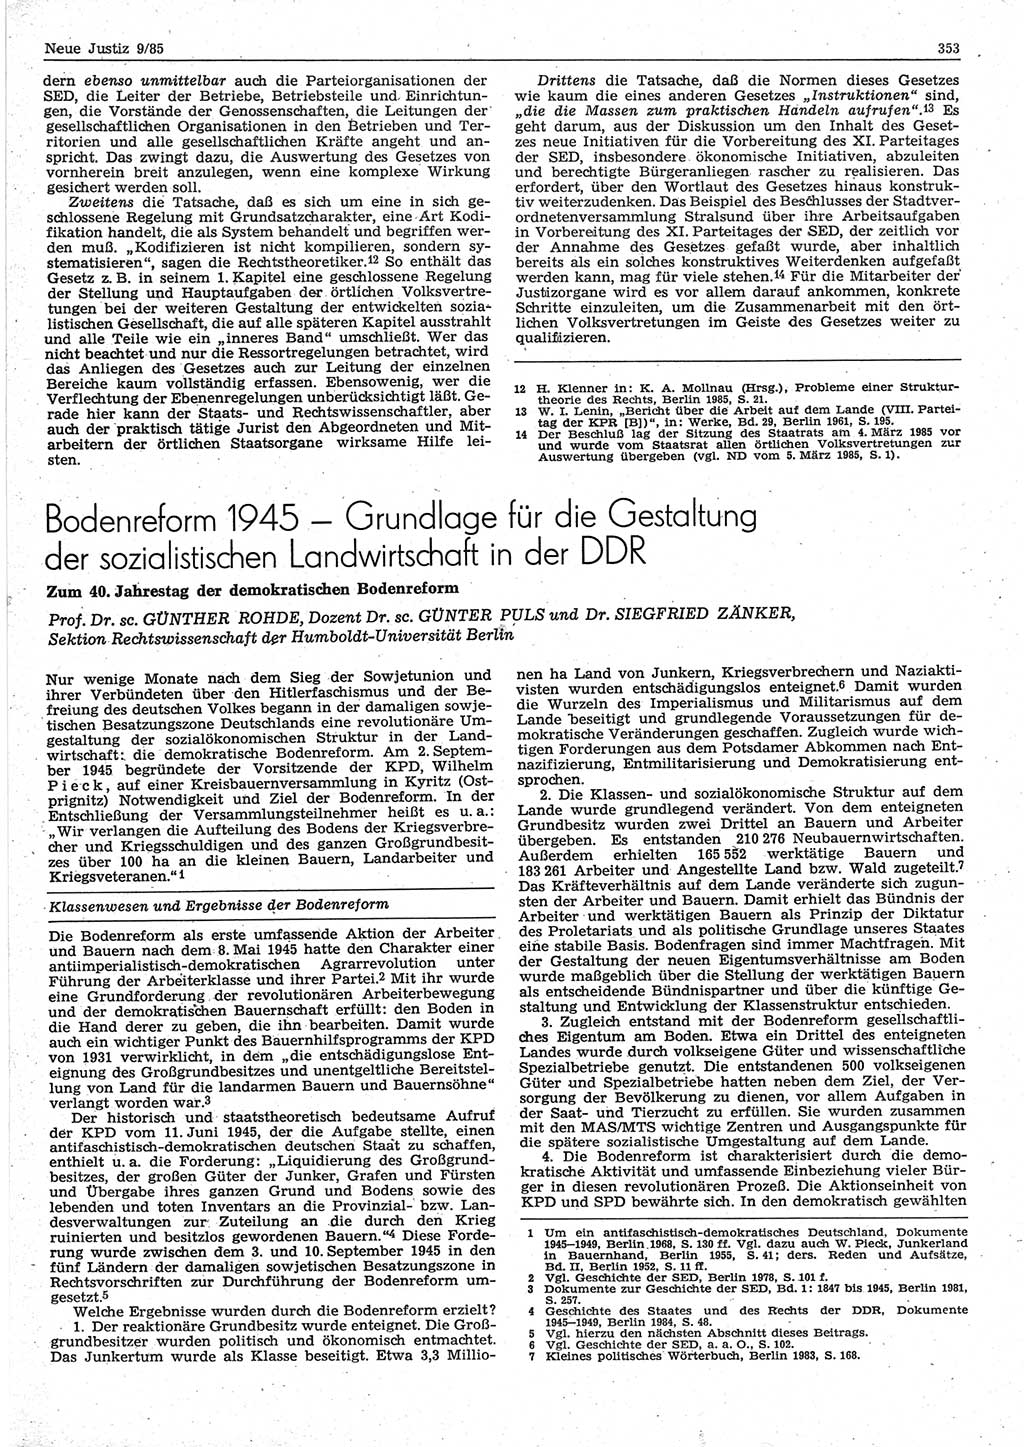 Neue Justiz (NJ), Zeitschrift für sozialistisches Recht und Gesetzlichkeit [Deutsche Demokratische Republik (DDR)], 39. Jahrgang 1985, Seite 353 (NJ DDR 1985, S. 353)